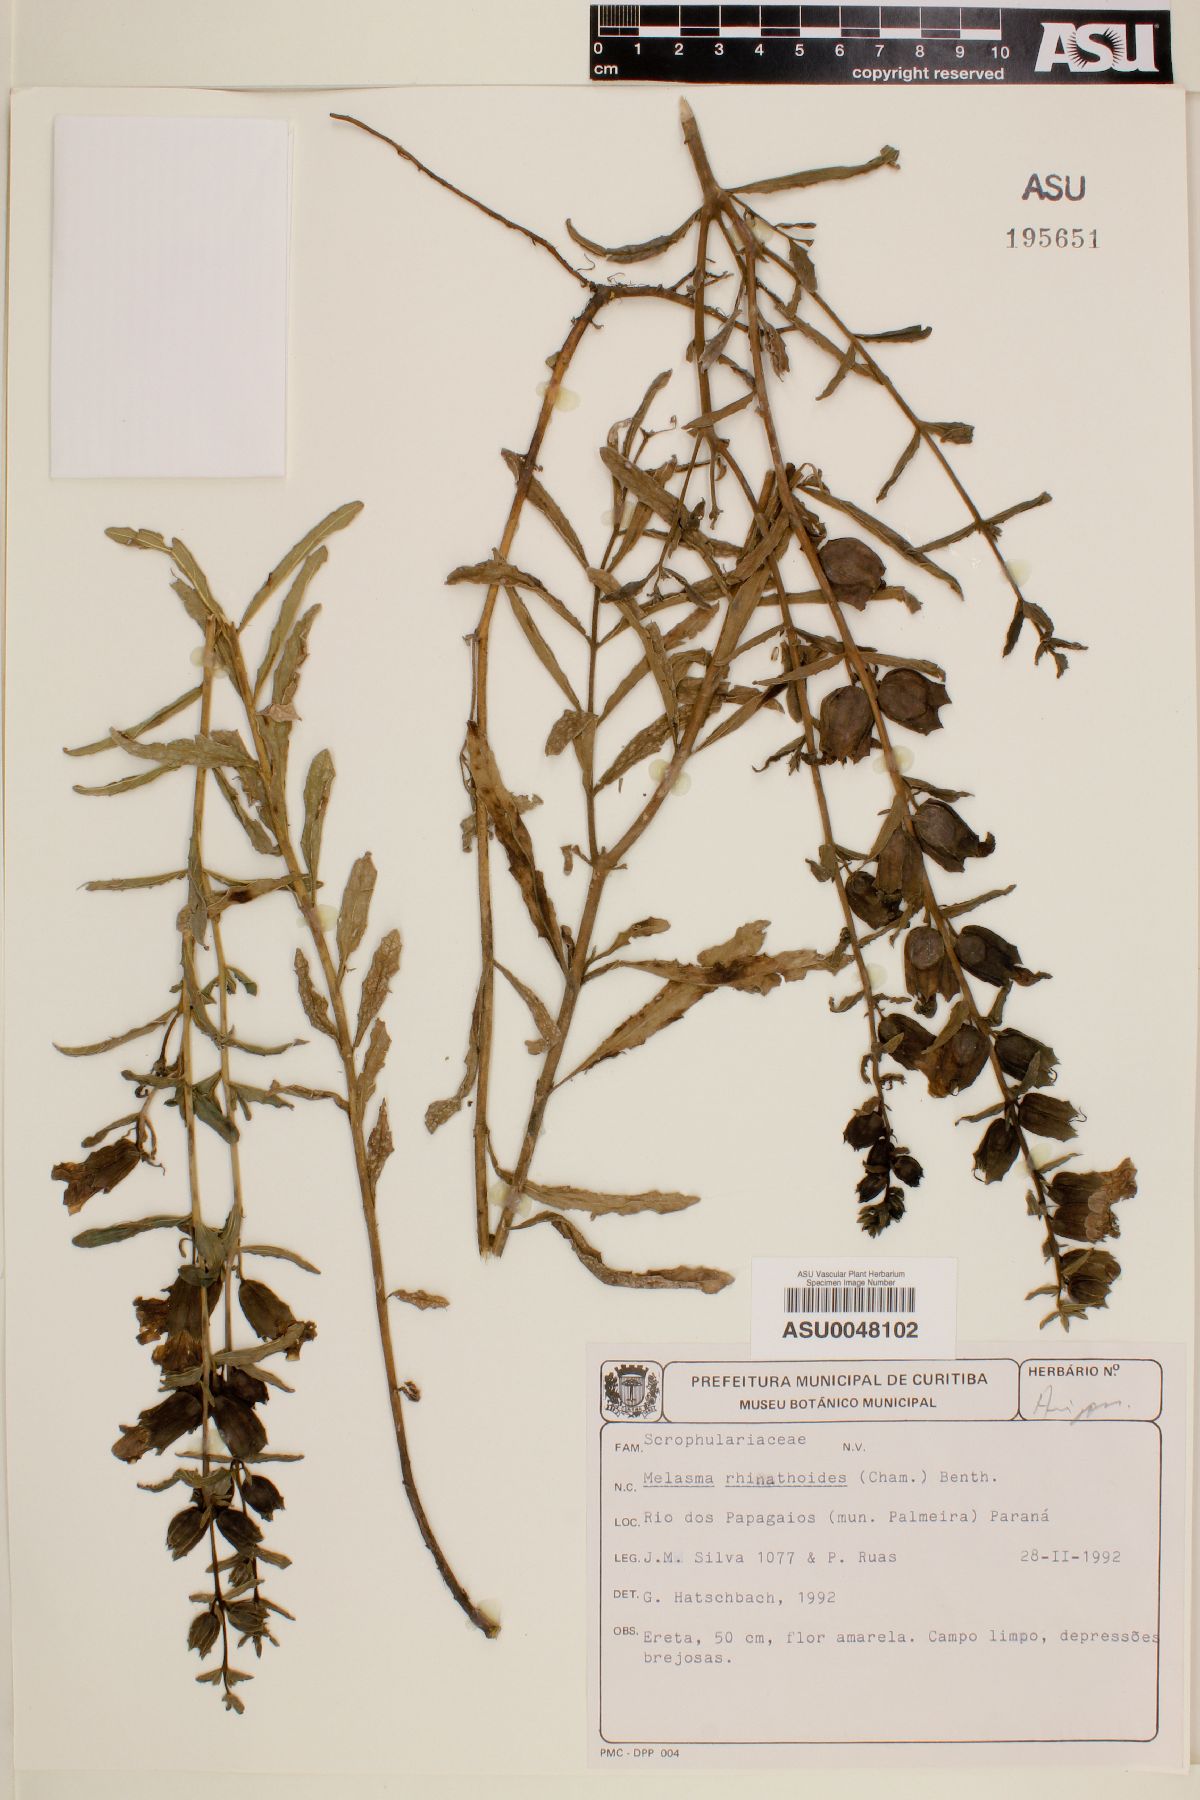 Melasma rhinanthoides image